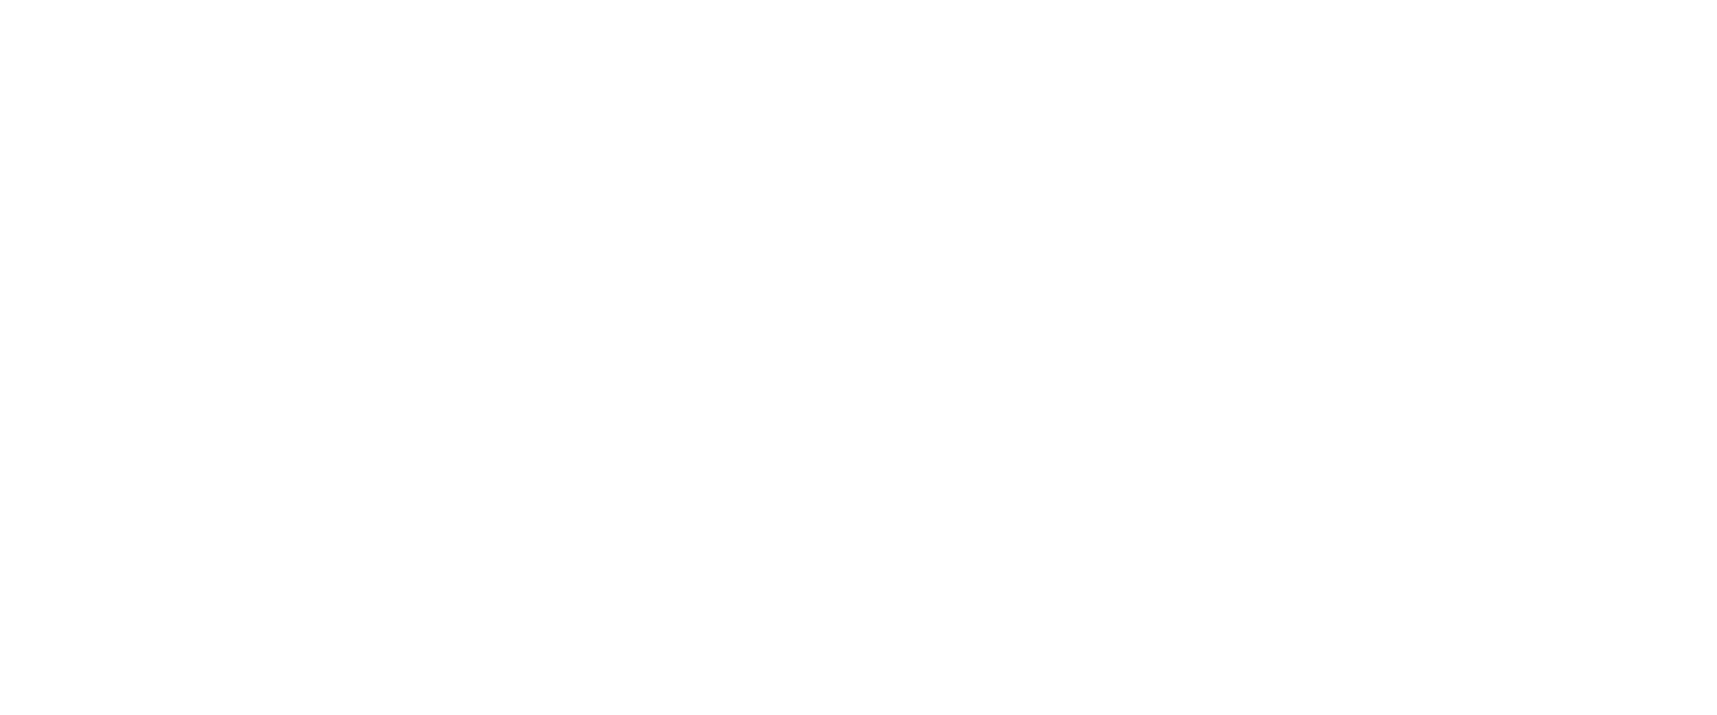 SPDR S&P 500 ETF Trust logo for dark backgrounds (transparent PNG)